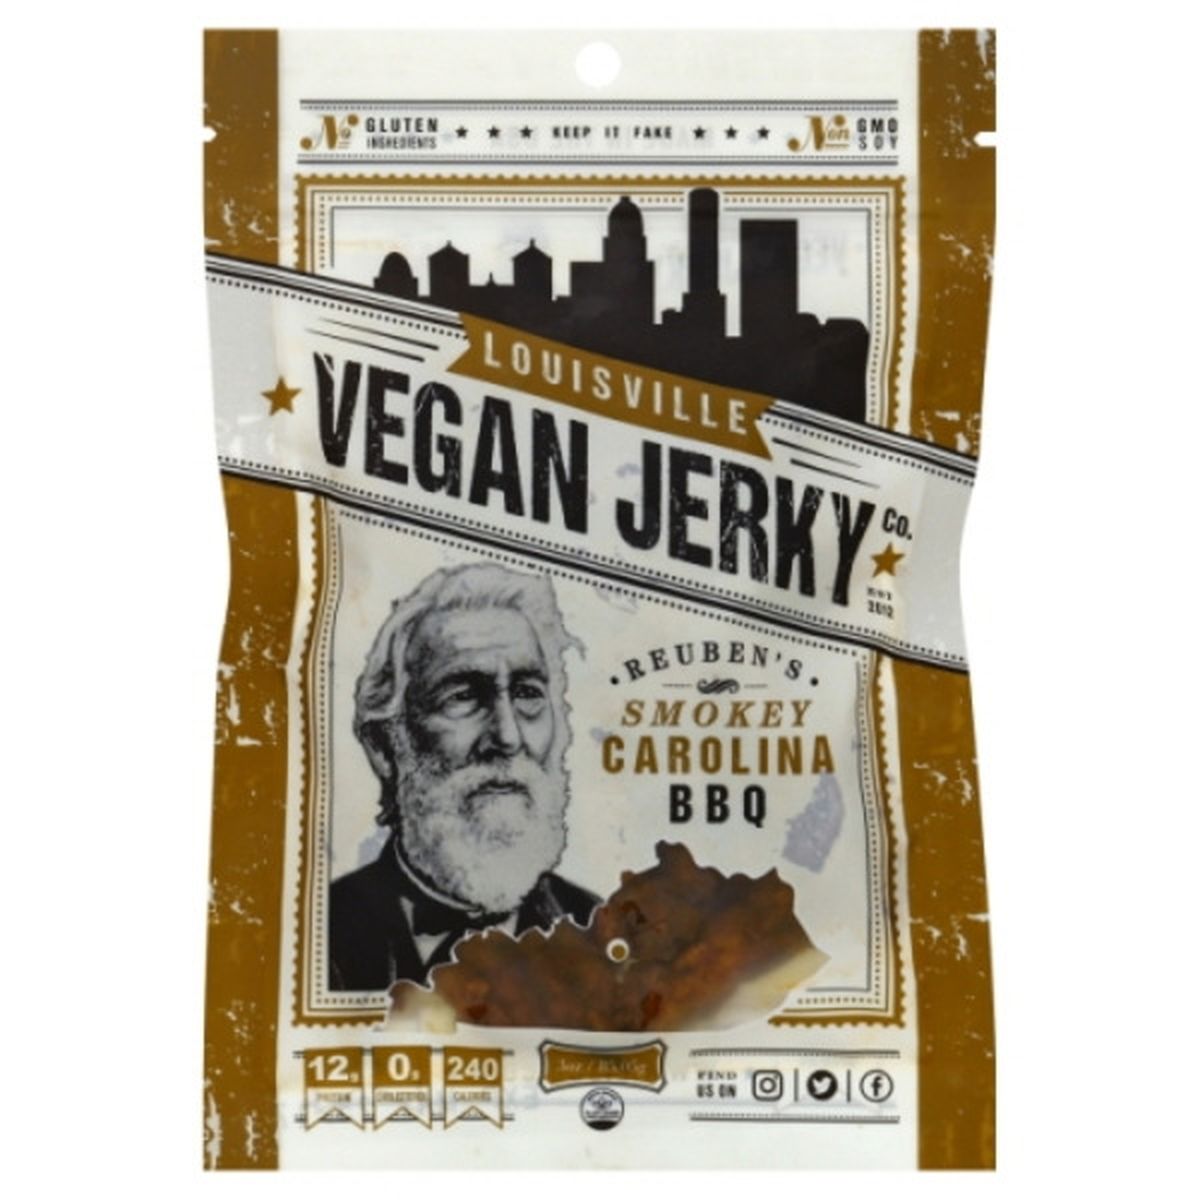 Calories in Louisville Vegan Jerky Vegan Jerky, Reuben's, Smokey Carolina BBQ